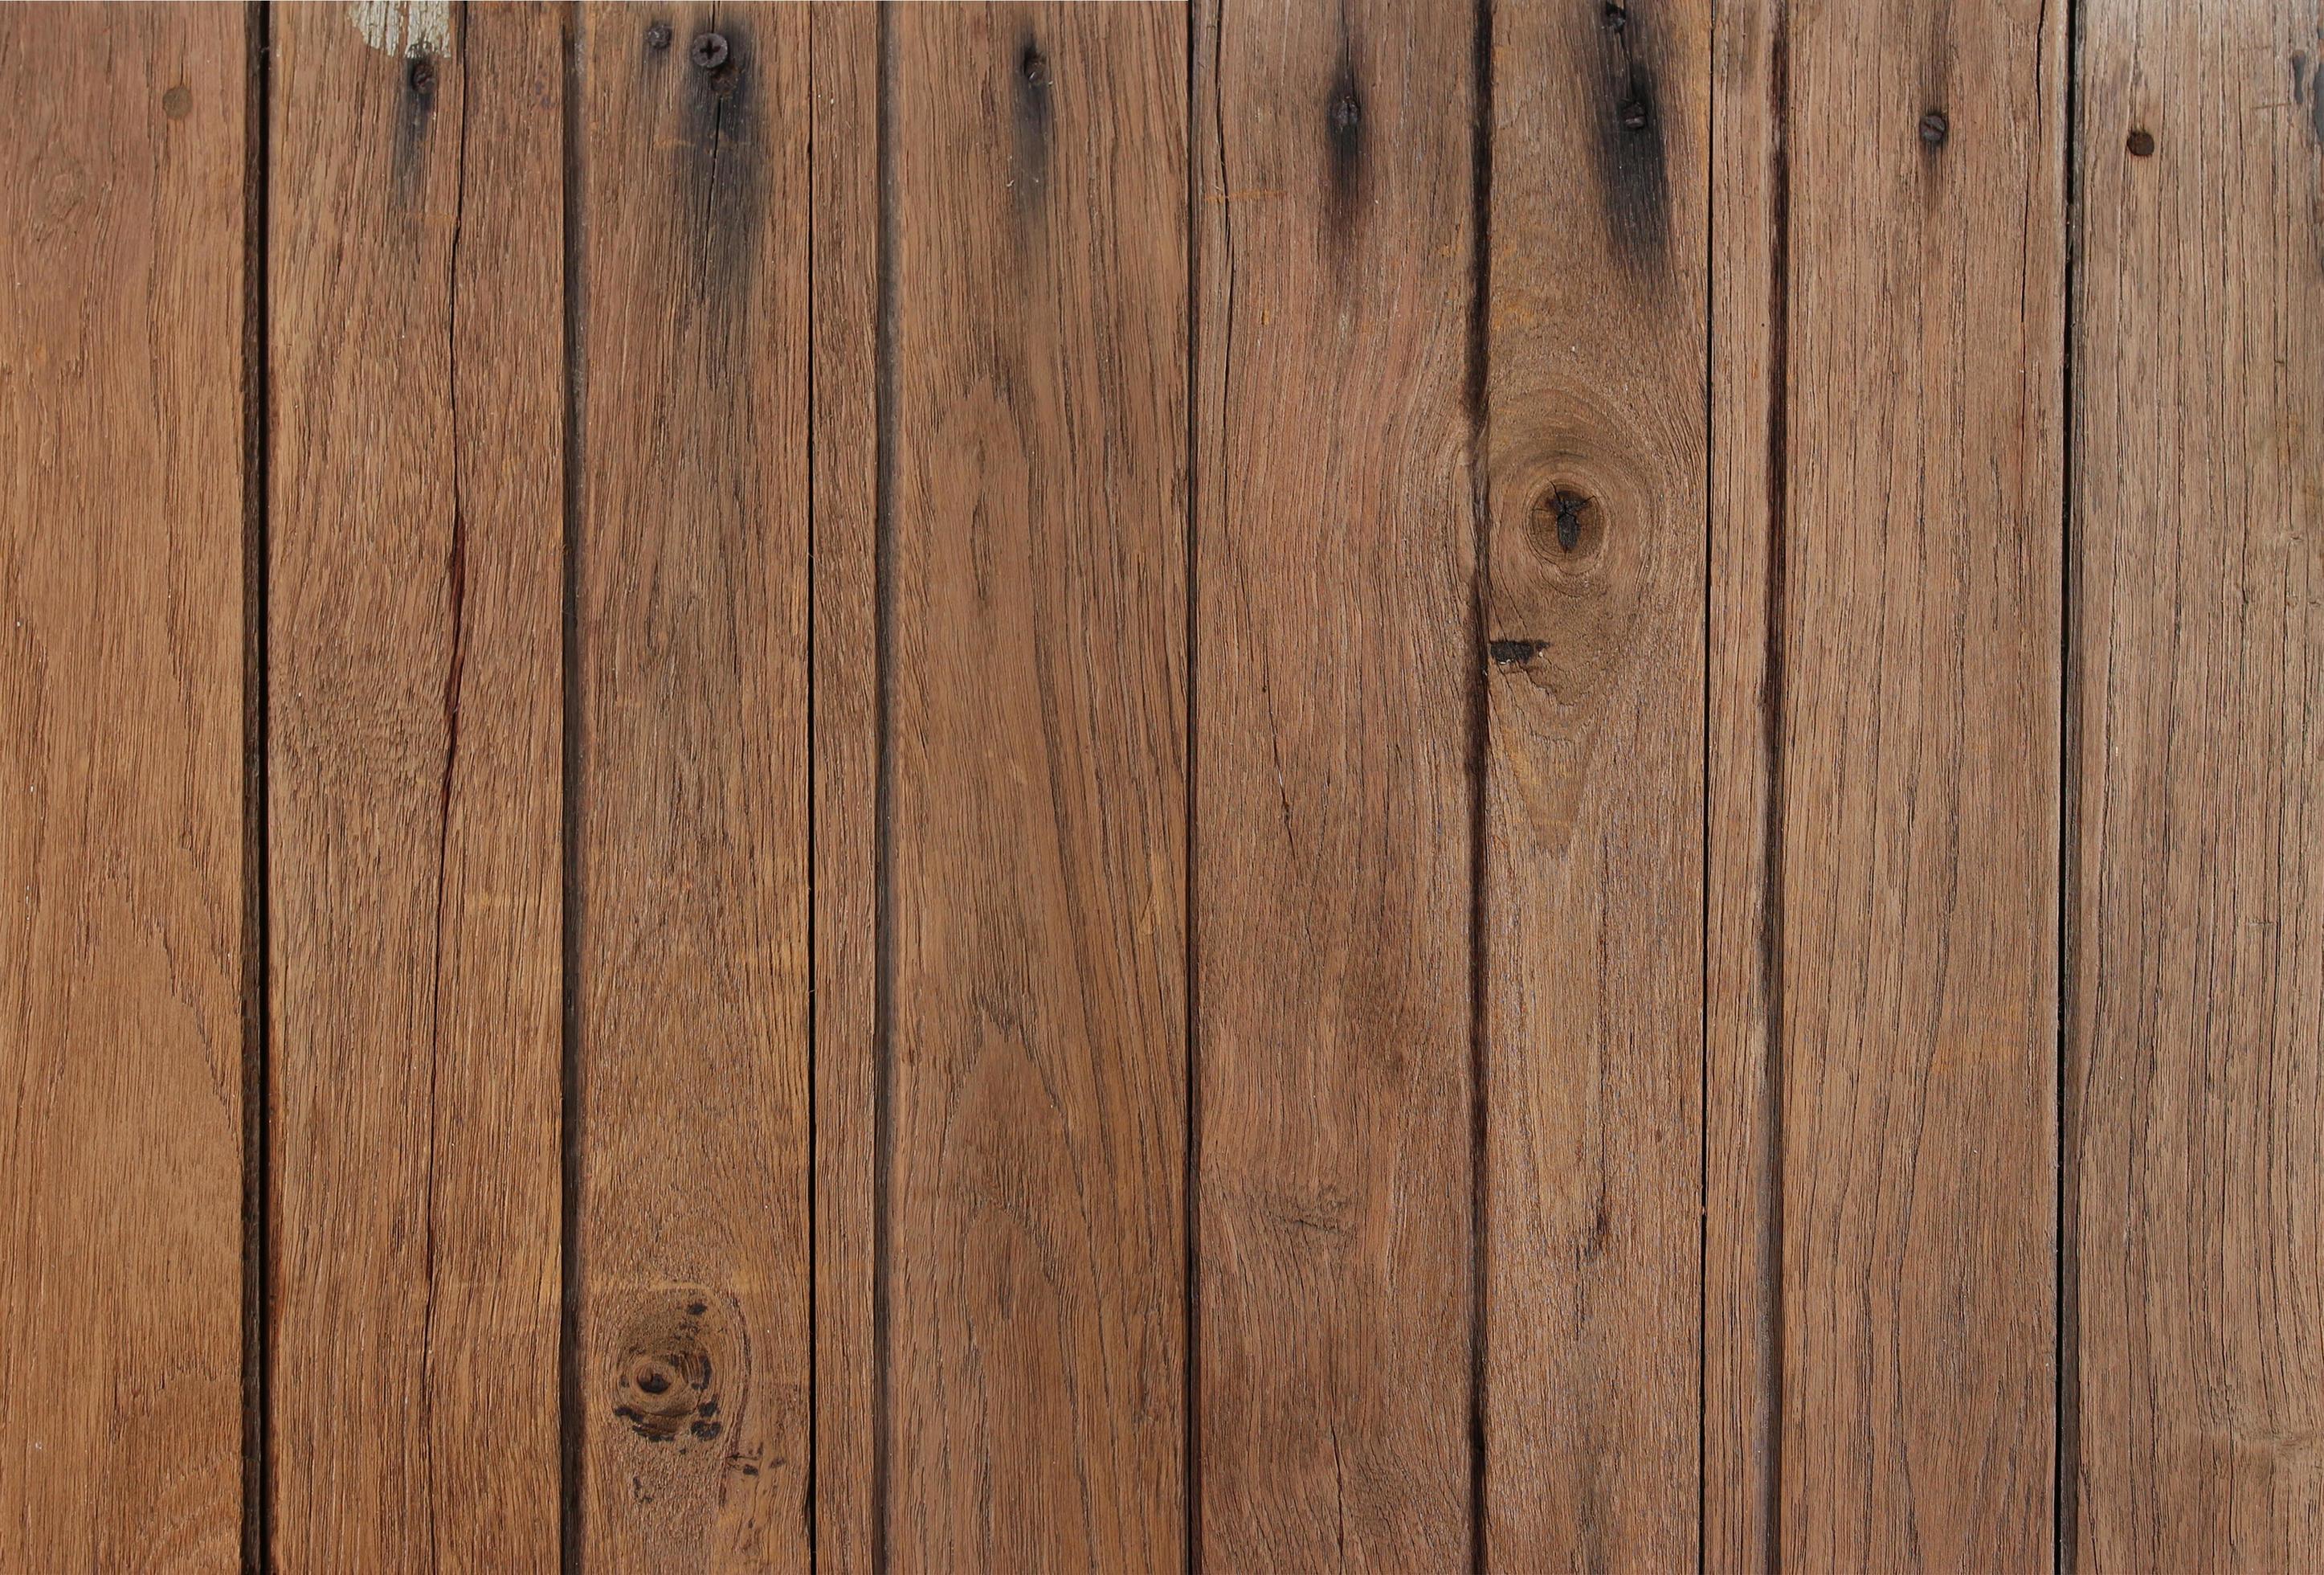 Mẫu gỗ vân gỗ thô là một lựa chọn hoàn hảo cho những người đam mê sự tinh tế và độc đáo. Với đường nét gỗ tự nhiên và màu sắc đa dạng, nó sẽ mang đến những cảm xúc rất đặc biệt và khác biệt cho căn phòng của bạn. Xem bức hình liên quan và cảm nhận những điều tuyệt vời nhất.